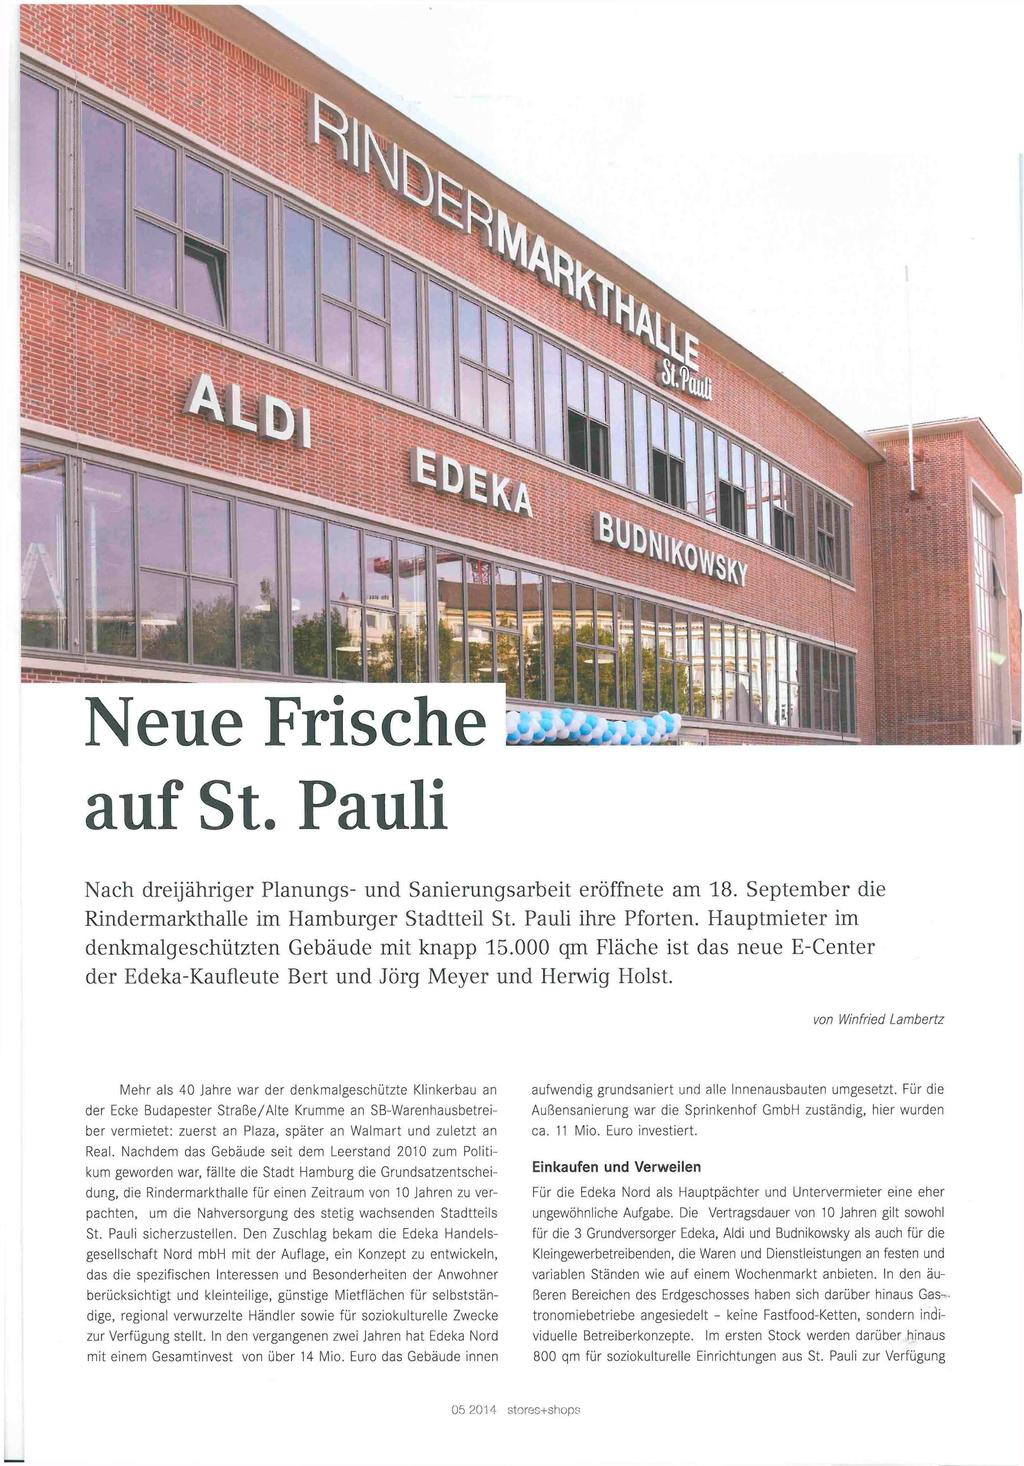 auf St. Pauli Nach dreijähriger Planungs- und Sanierungsarbeit eröffnete am 18. September die Rindermarkthalle im Hamburger Stadtteil St. Pauli ihre Pforten.